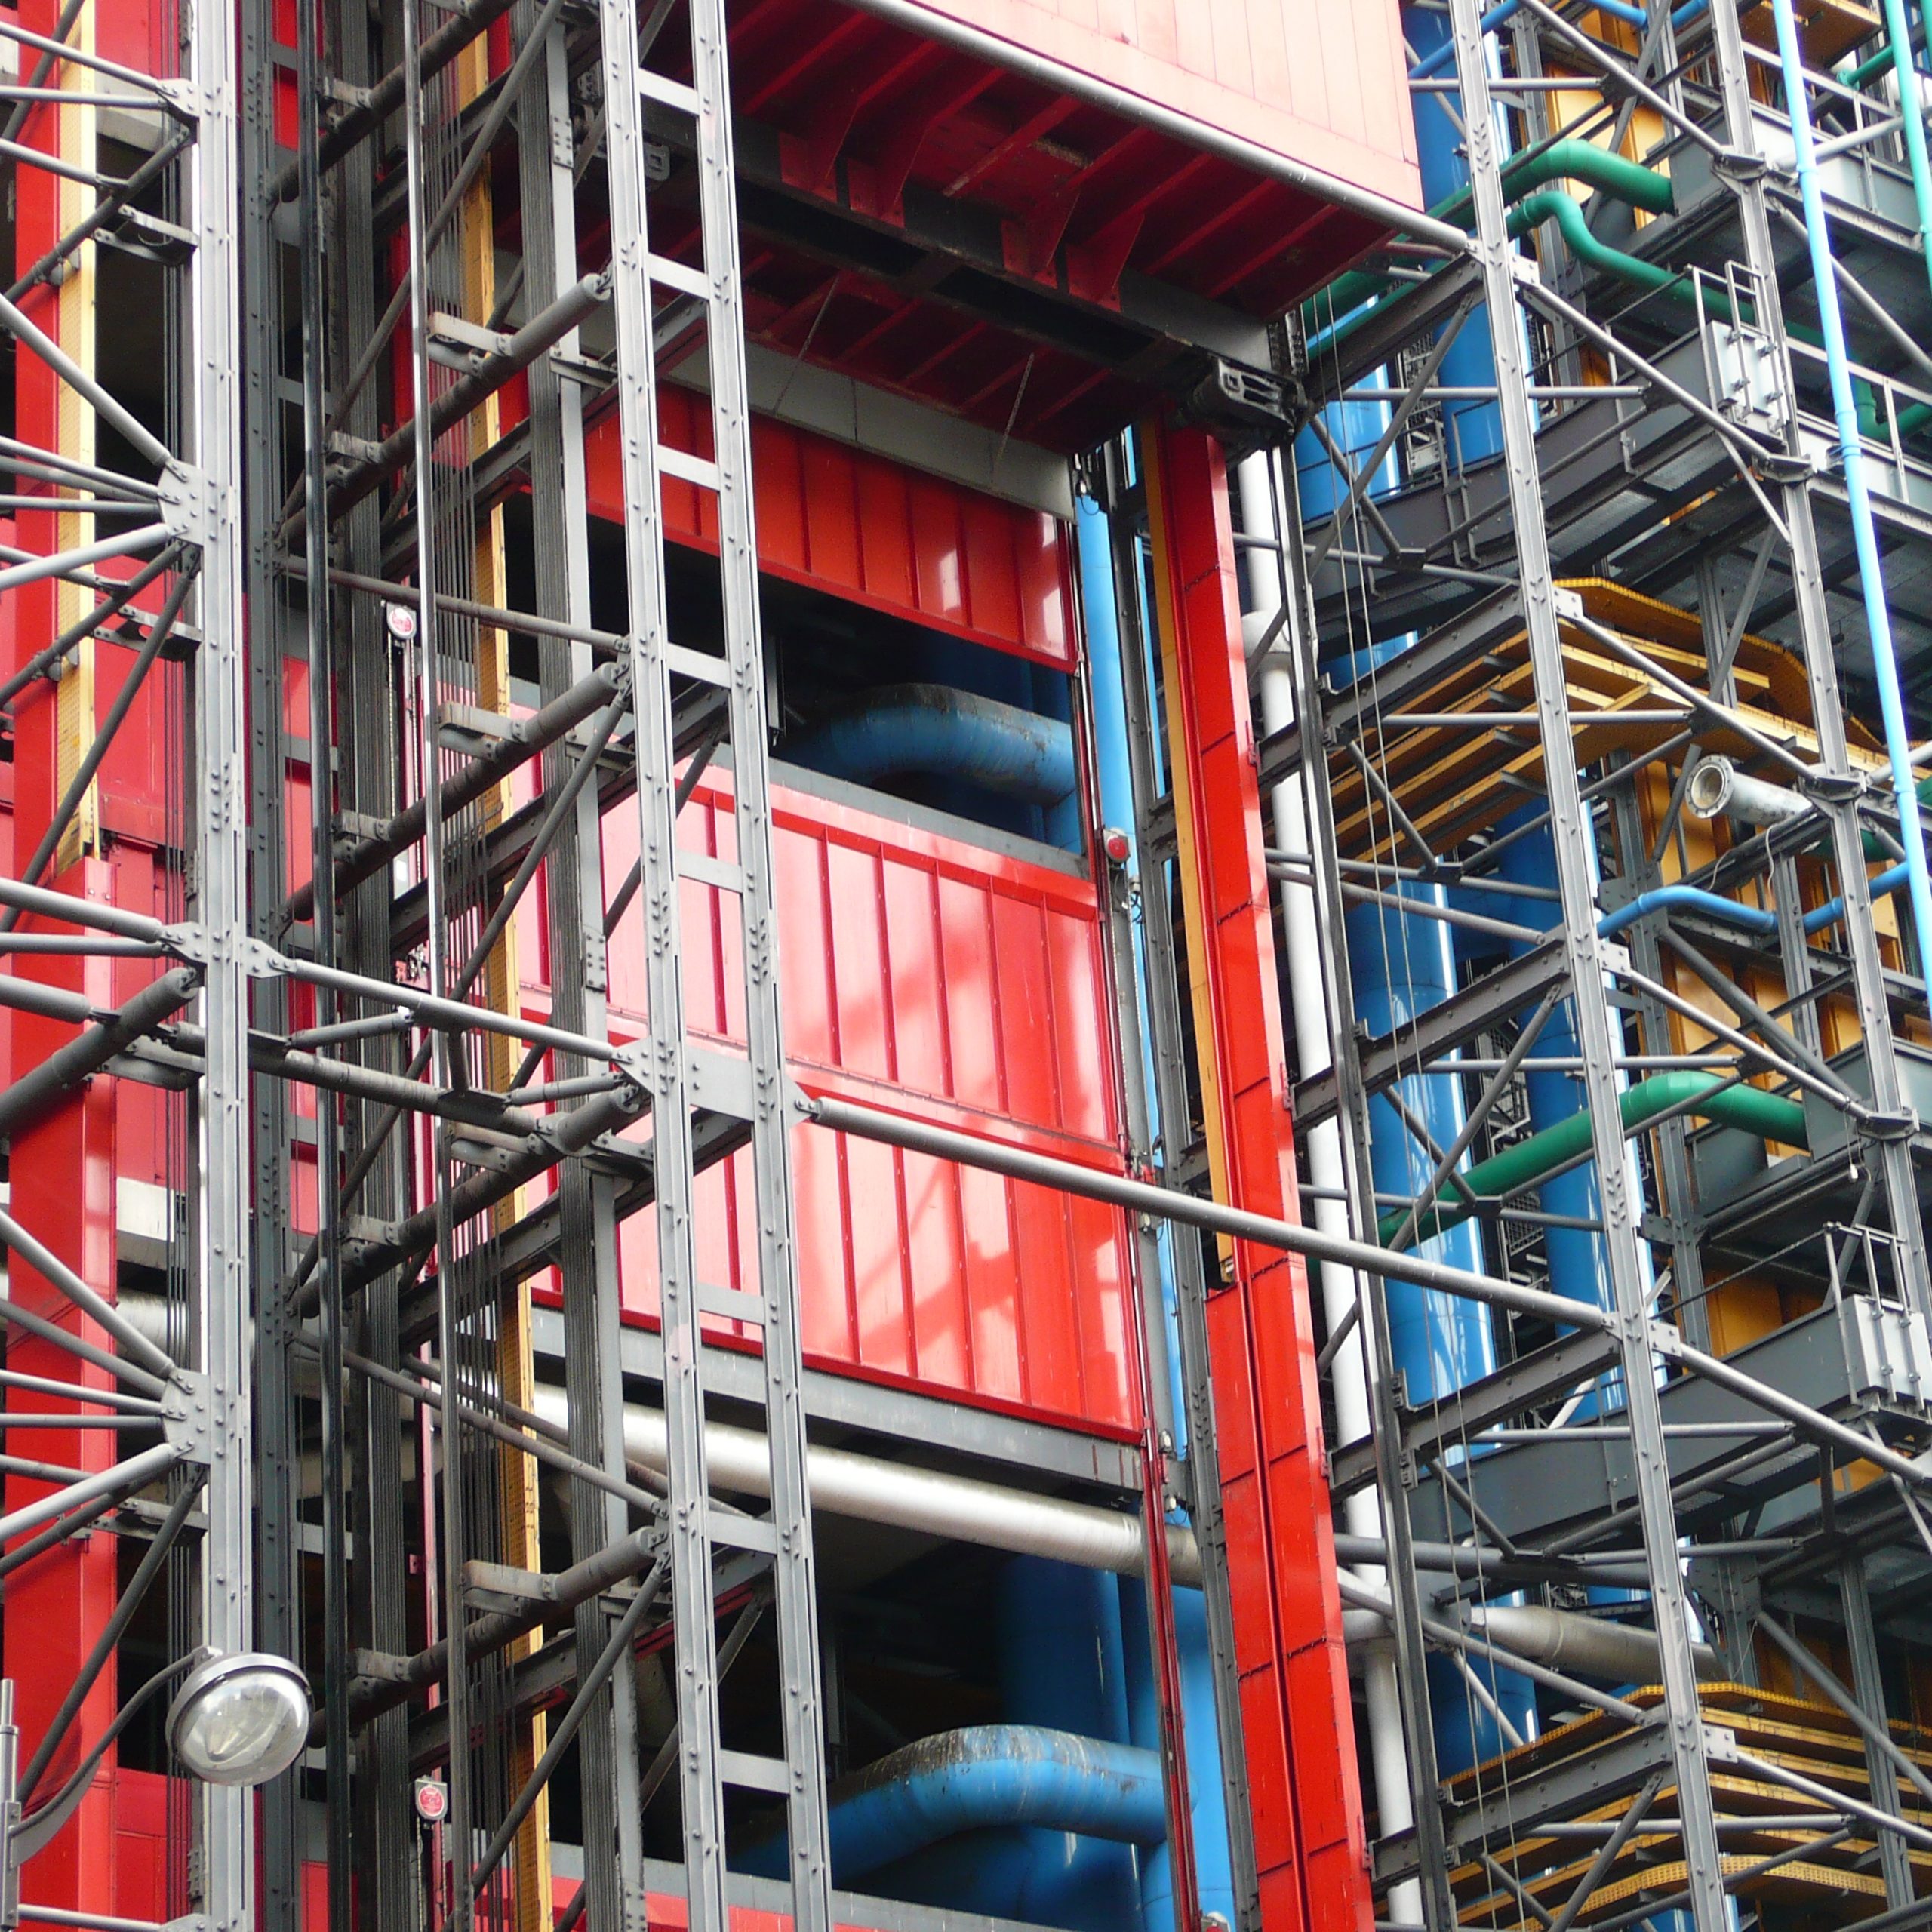 Pompidou_Centre_building_technology: HIGH-TECH ARCHITECTURE